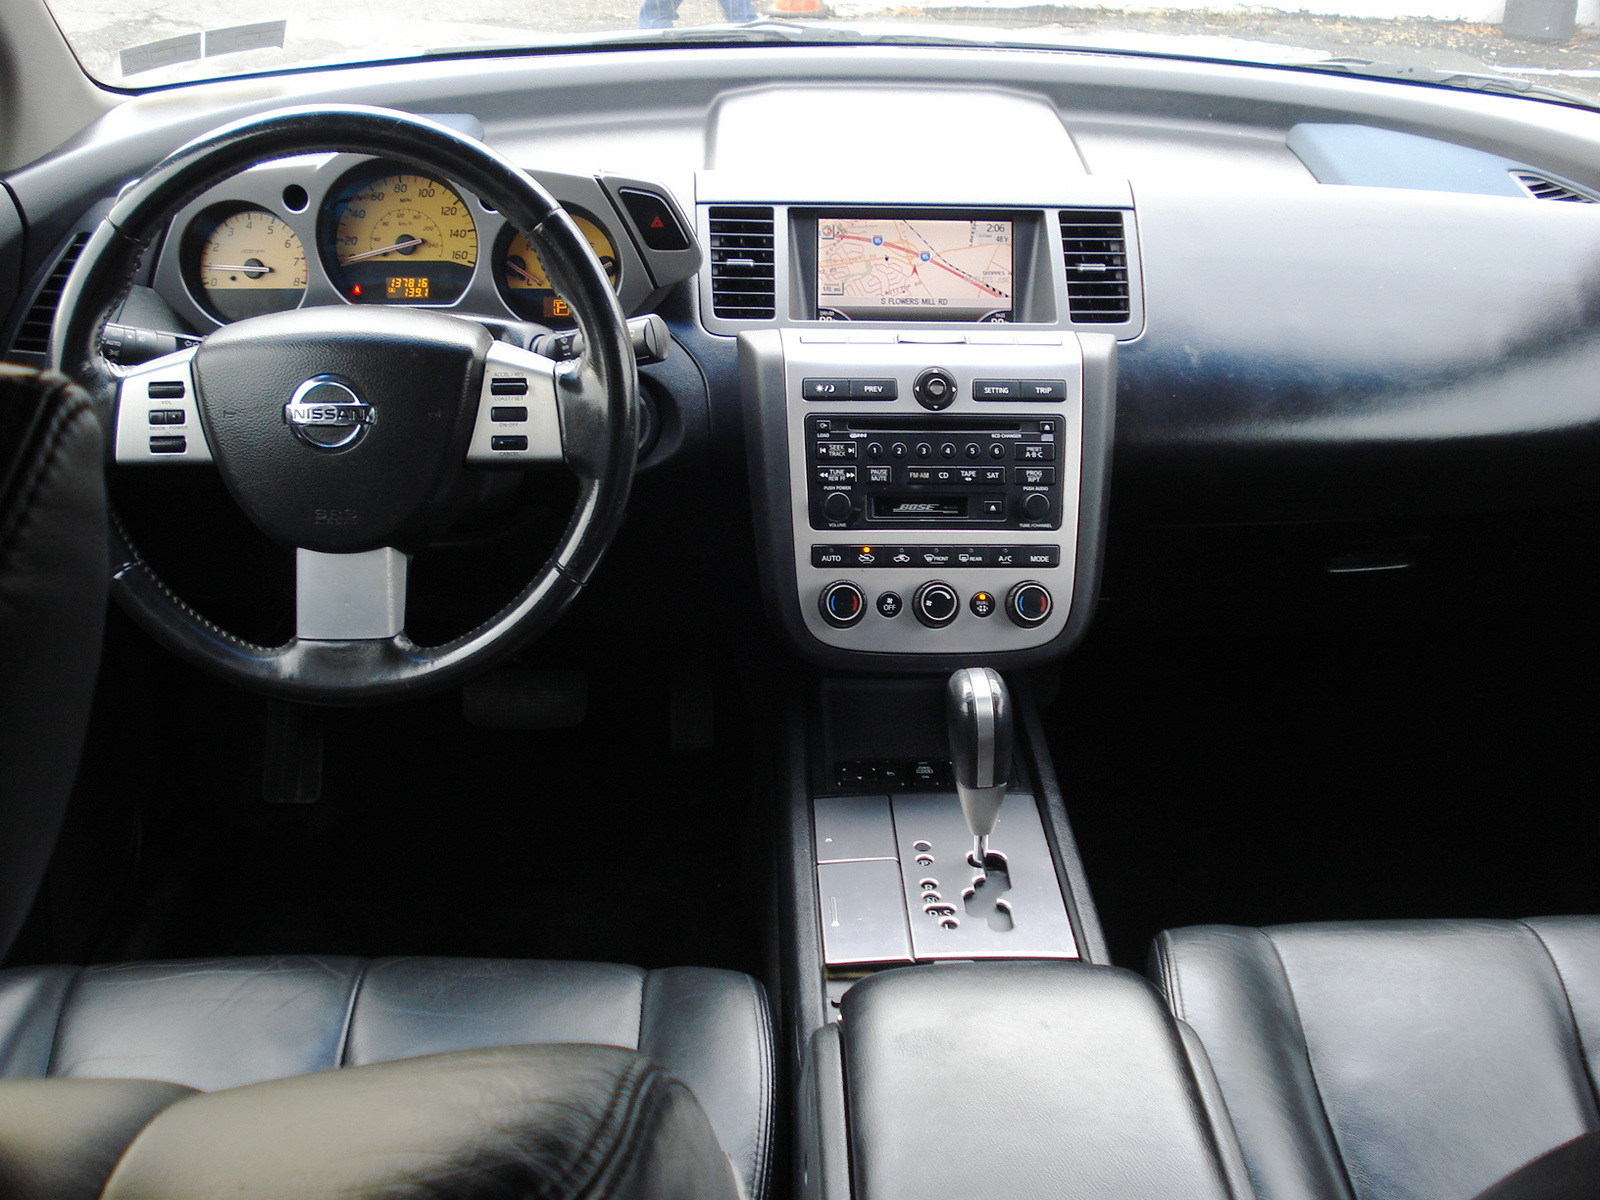 2004 Nissan murano interior dimensions #7